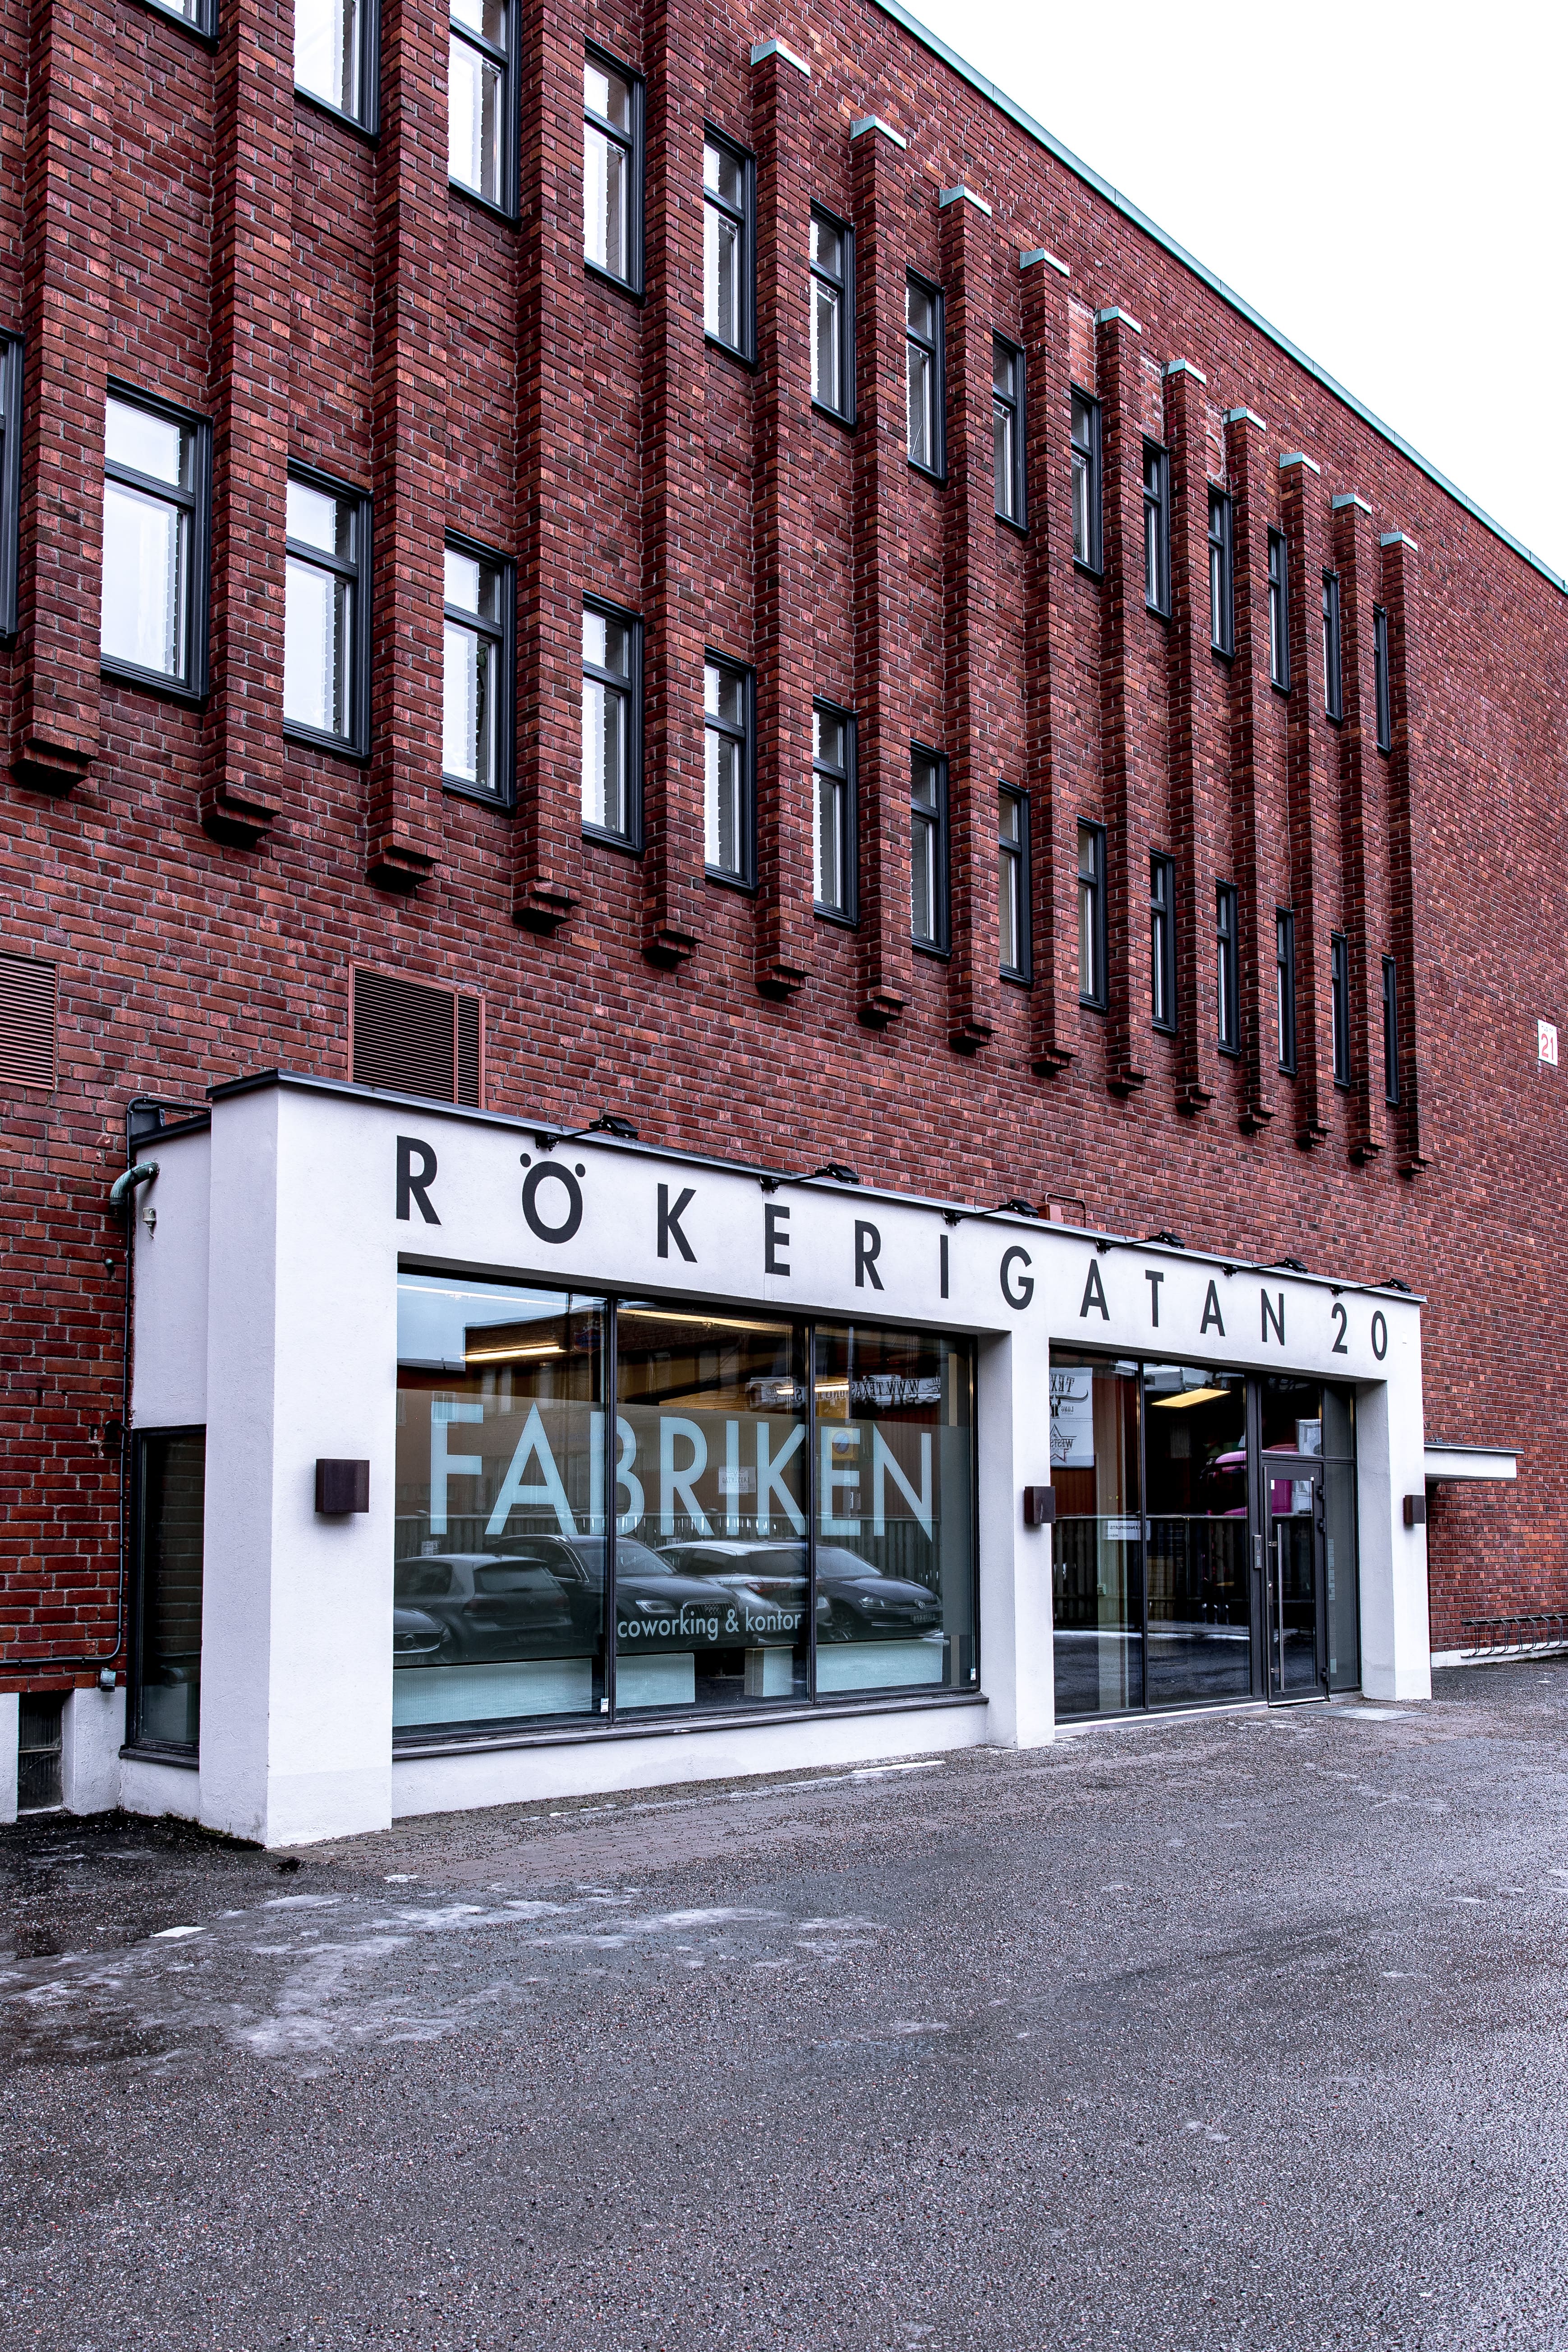 Rökerigatan 20 - 1 Fabriken - Rökerigatan 20, fasad.jpg